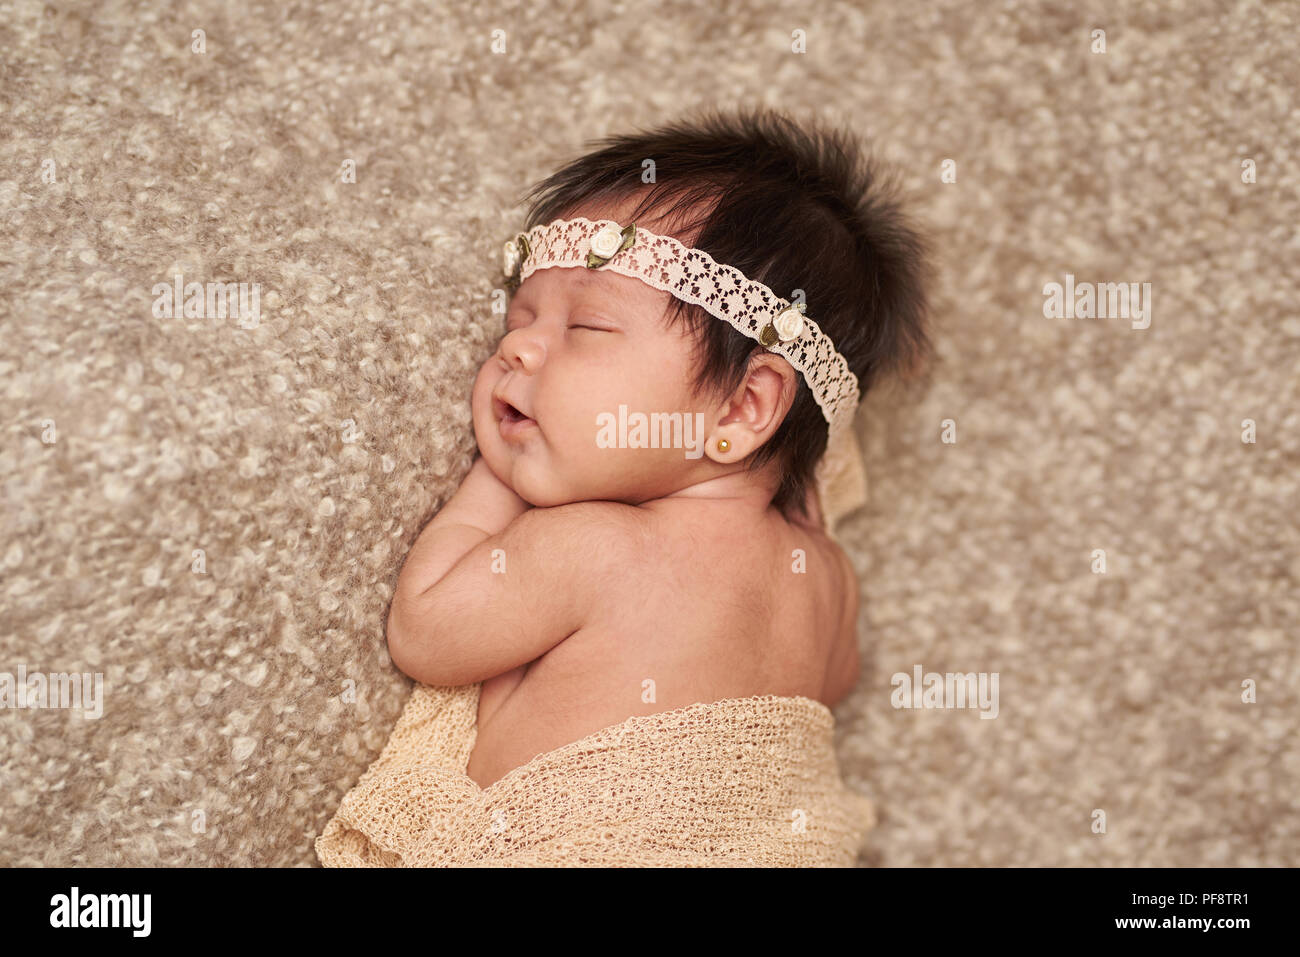 Infanzia felice tema. Carino il sonno del neonato marrone sul morbido manto Foto Stock